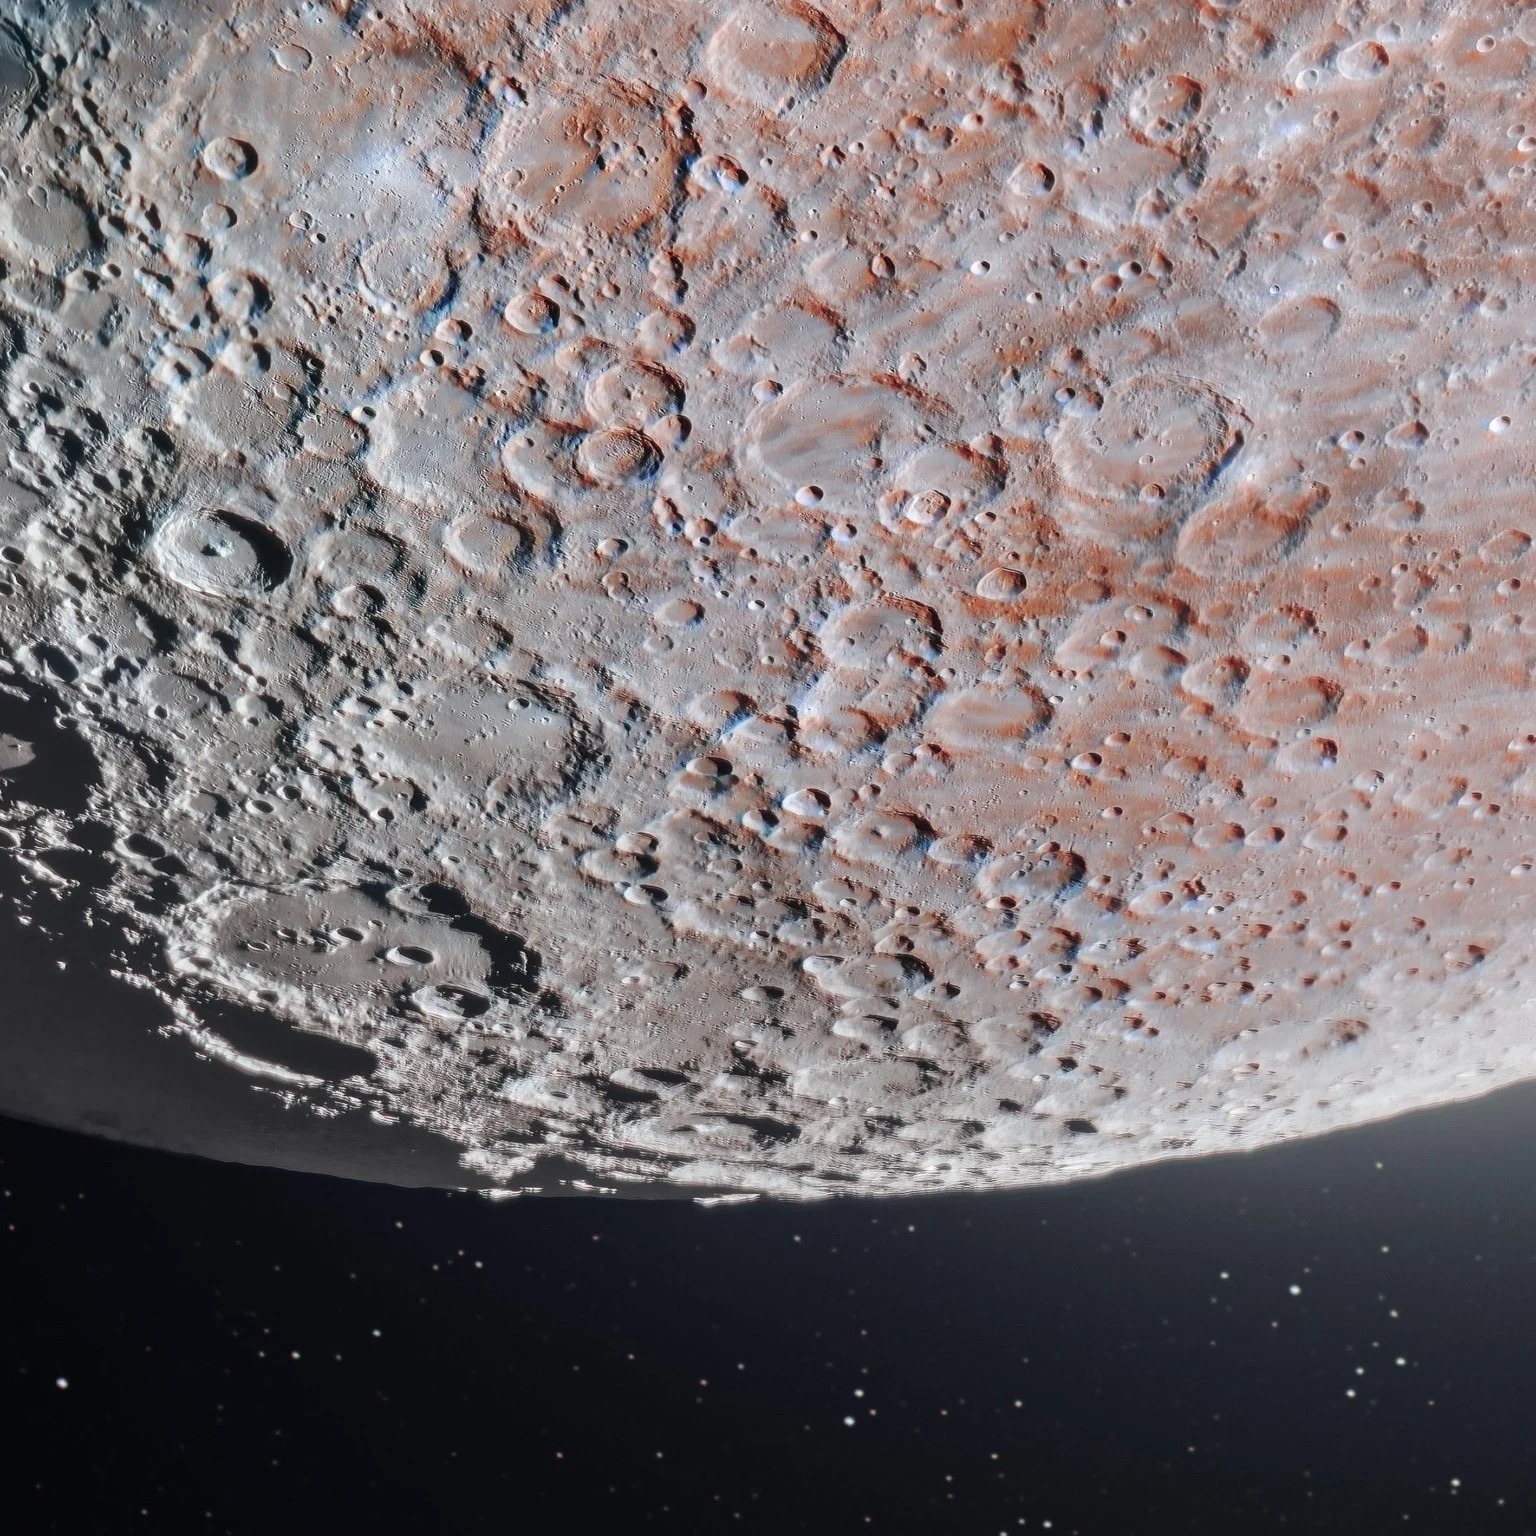 174-мегапіксельне зображення Місяця «Полювання на Артеміду»